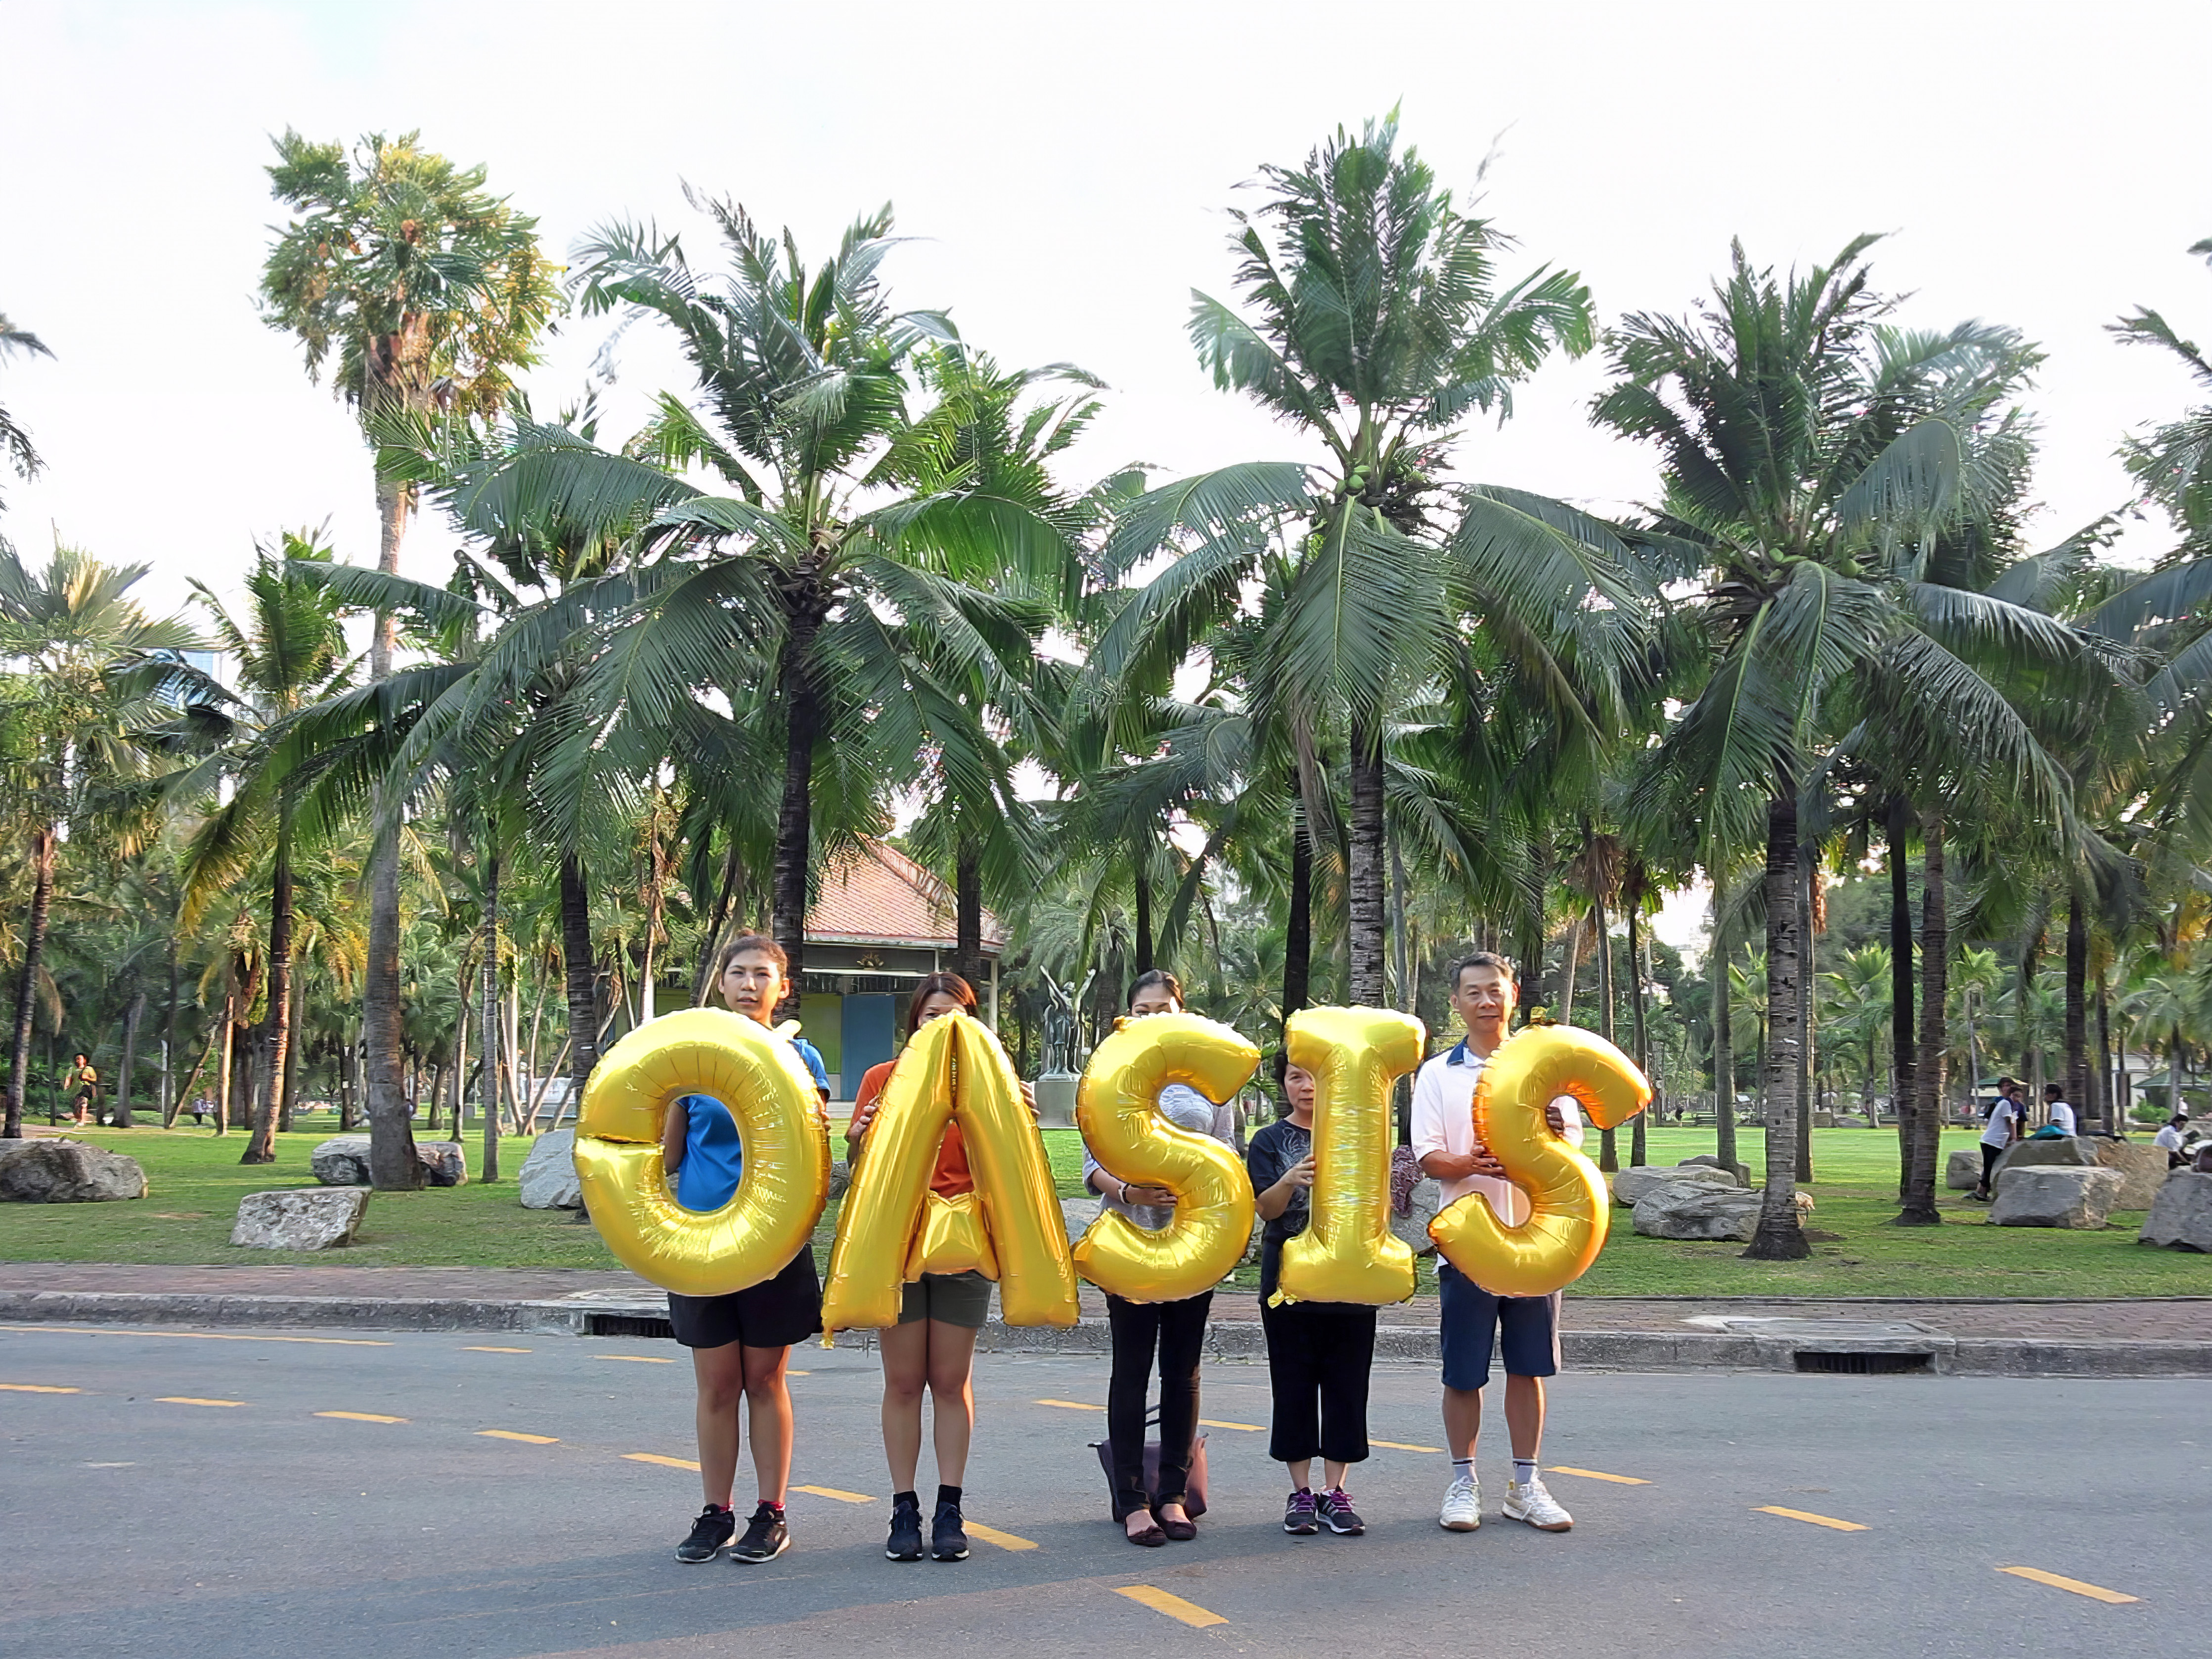 Thailand, Bangkok, Lumpini Park - Oasis, Silence was Golden, gold balloons